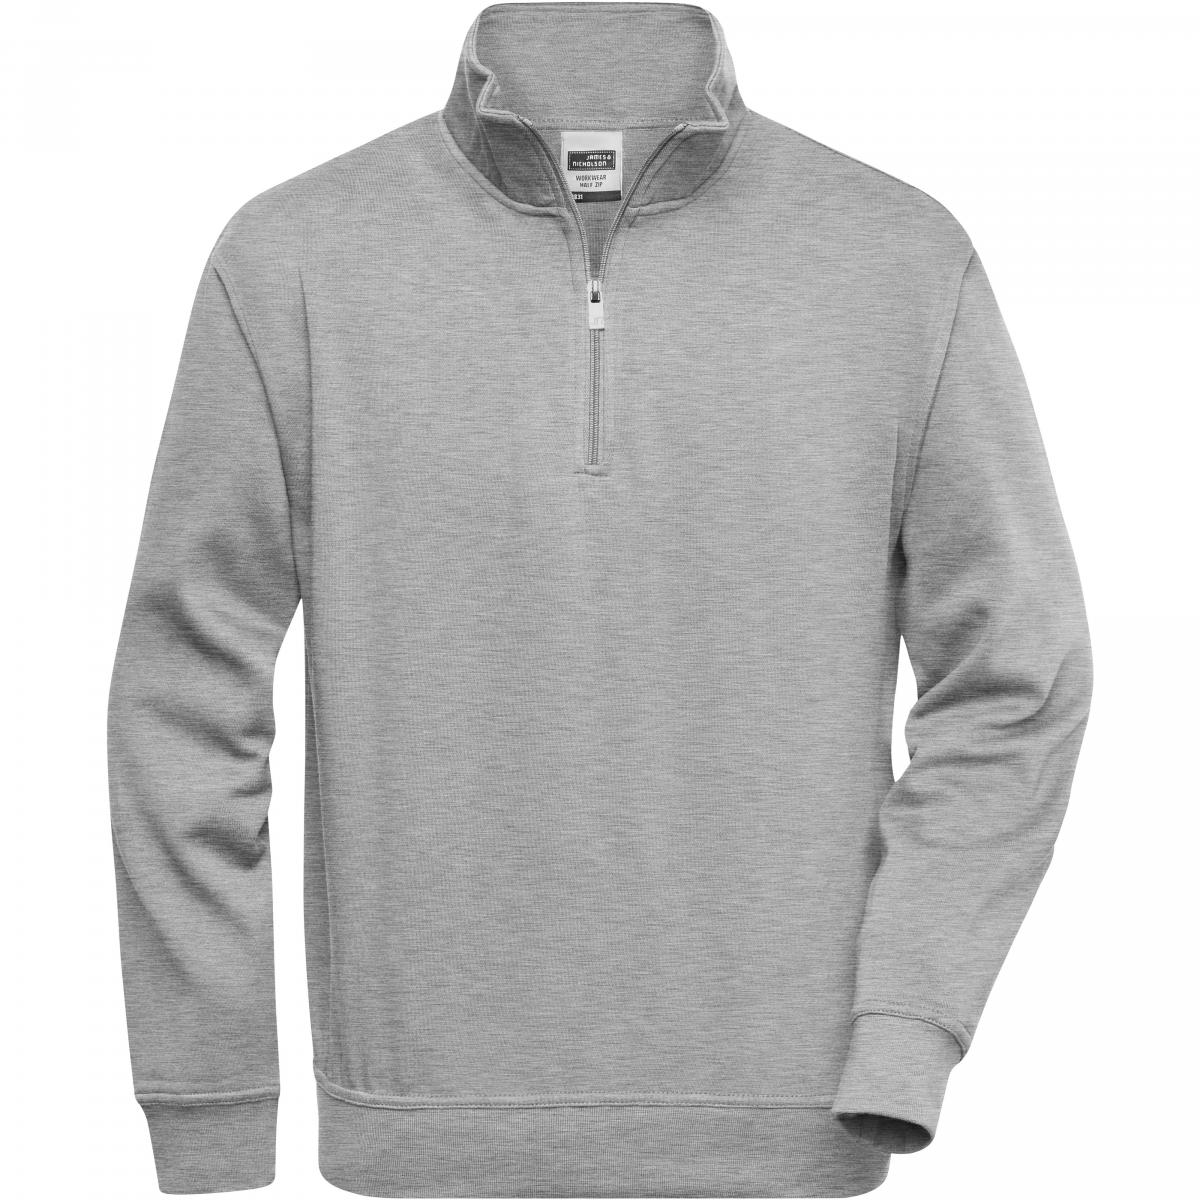 Hersteller: James+Nicholson Herstellernummer: JN831 Artikelbezeichnung: Workwear Half Zip Sweatshirt +Waschbar bis 60 °C Farbe: Grey Heather